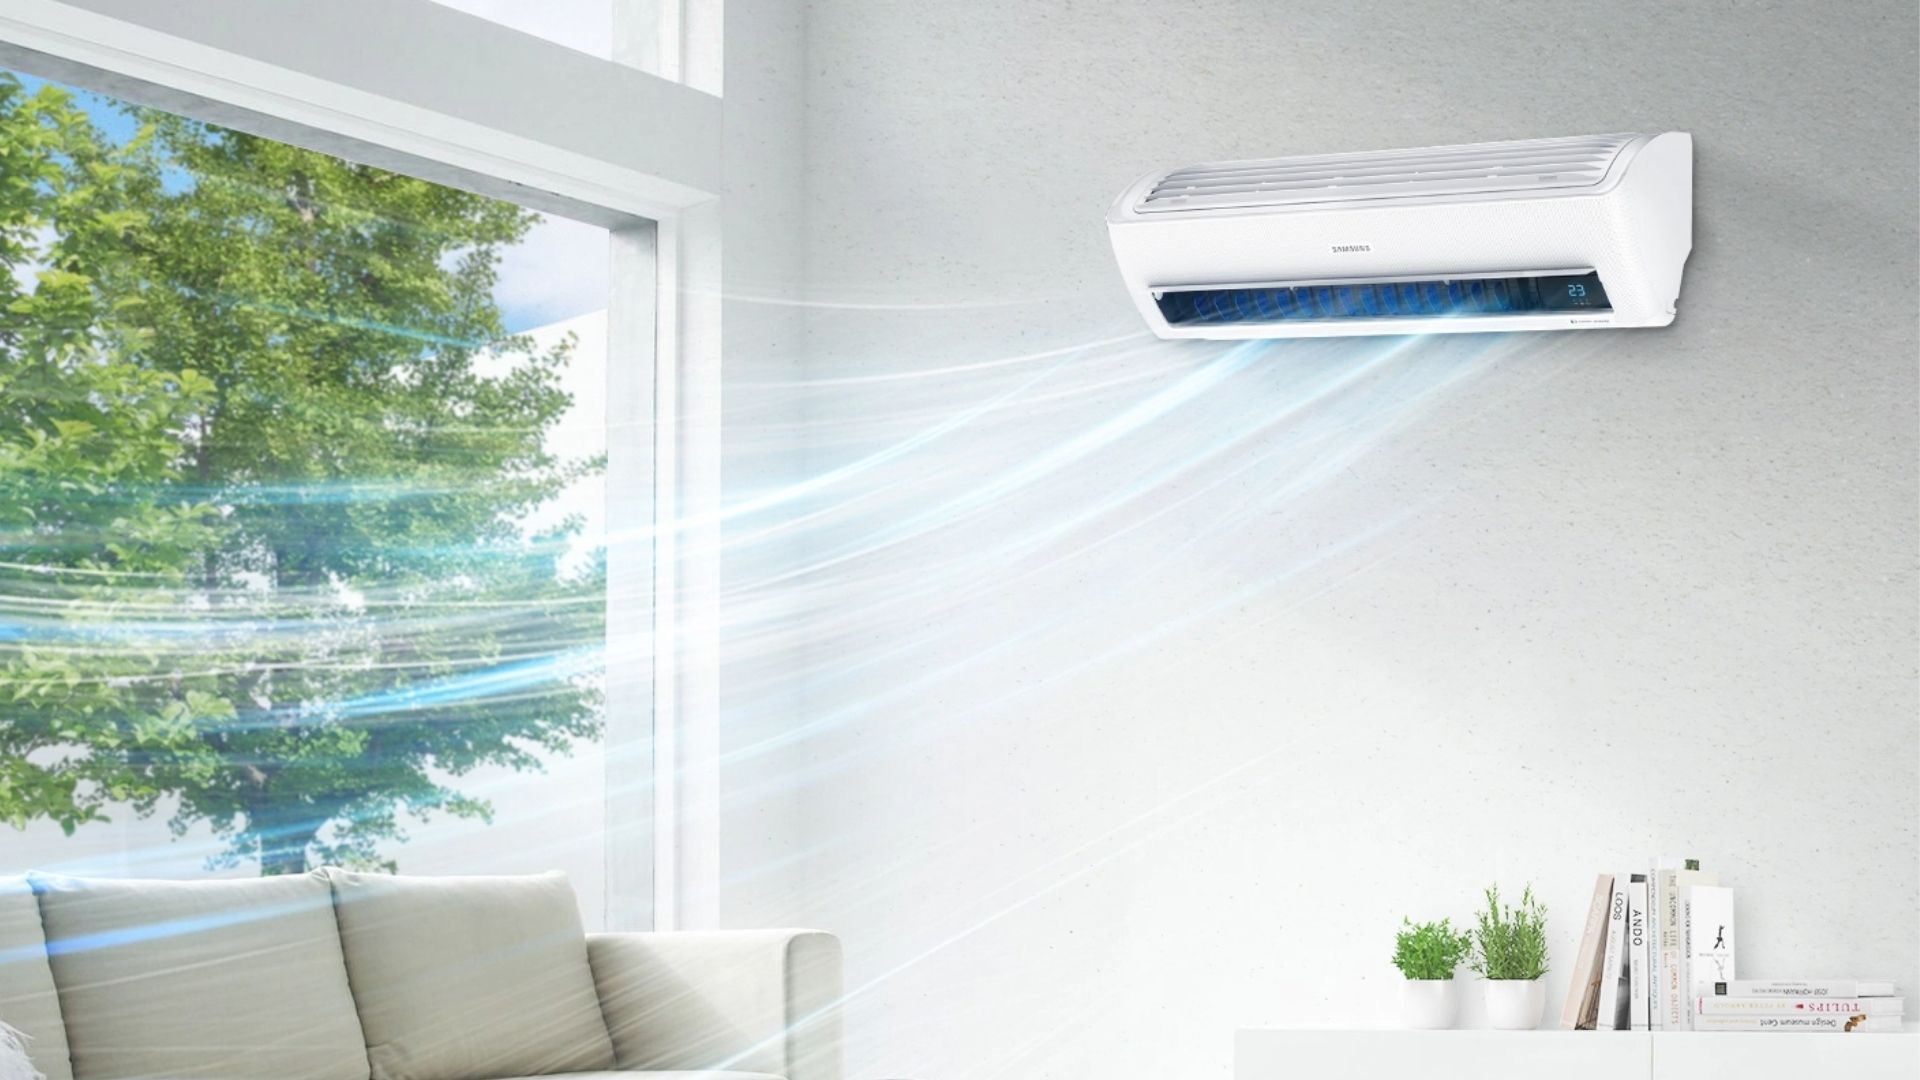 Ar-condicionado split Samsung soltando corrente de ar para refrescar sala